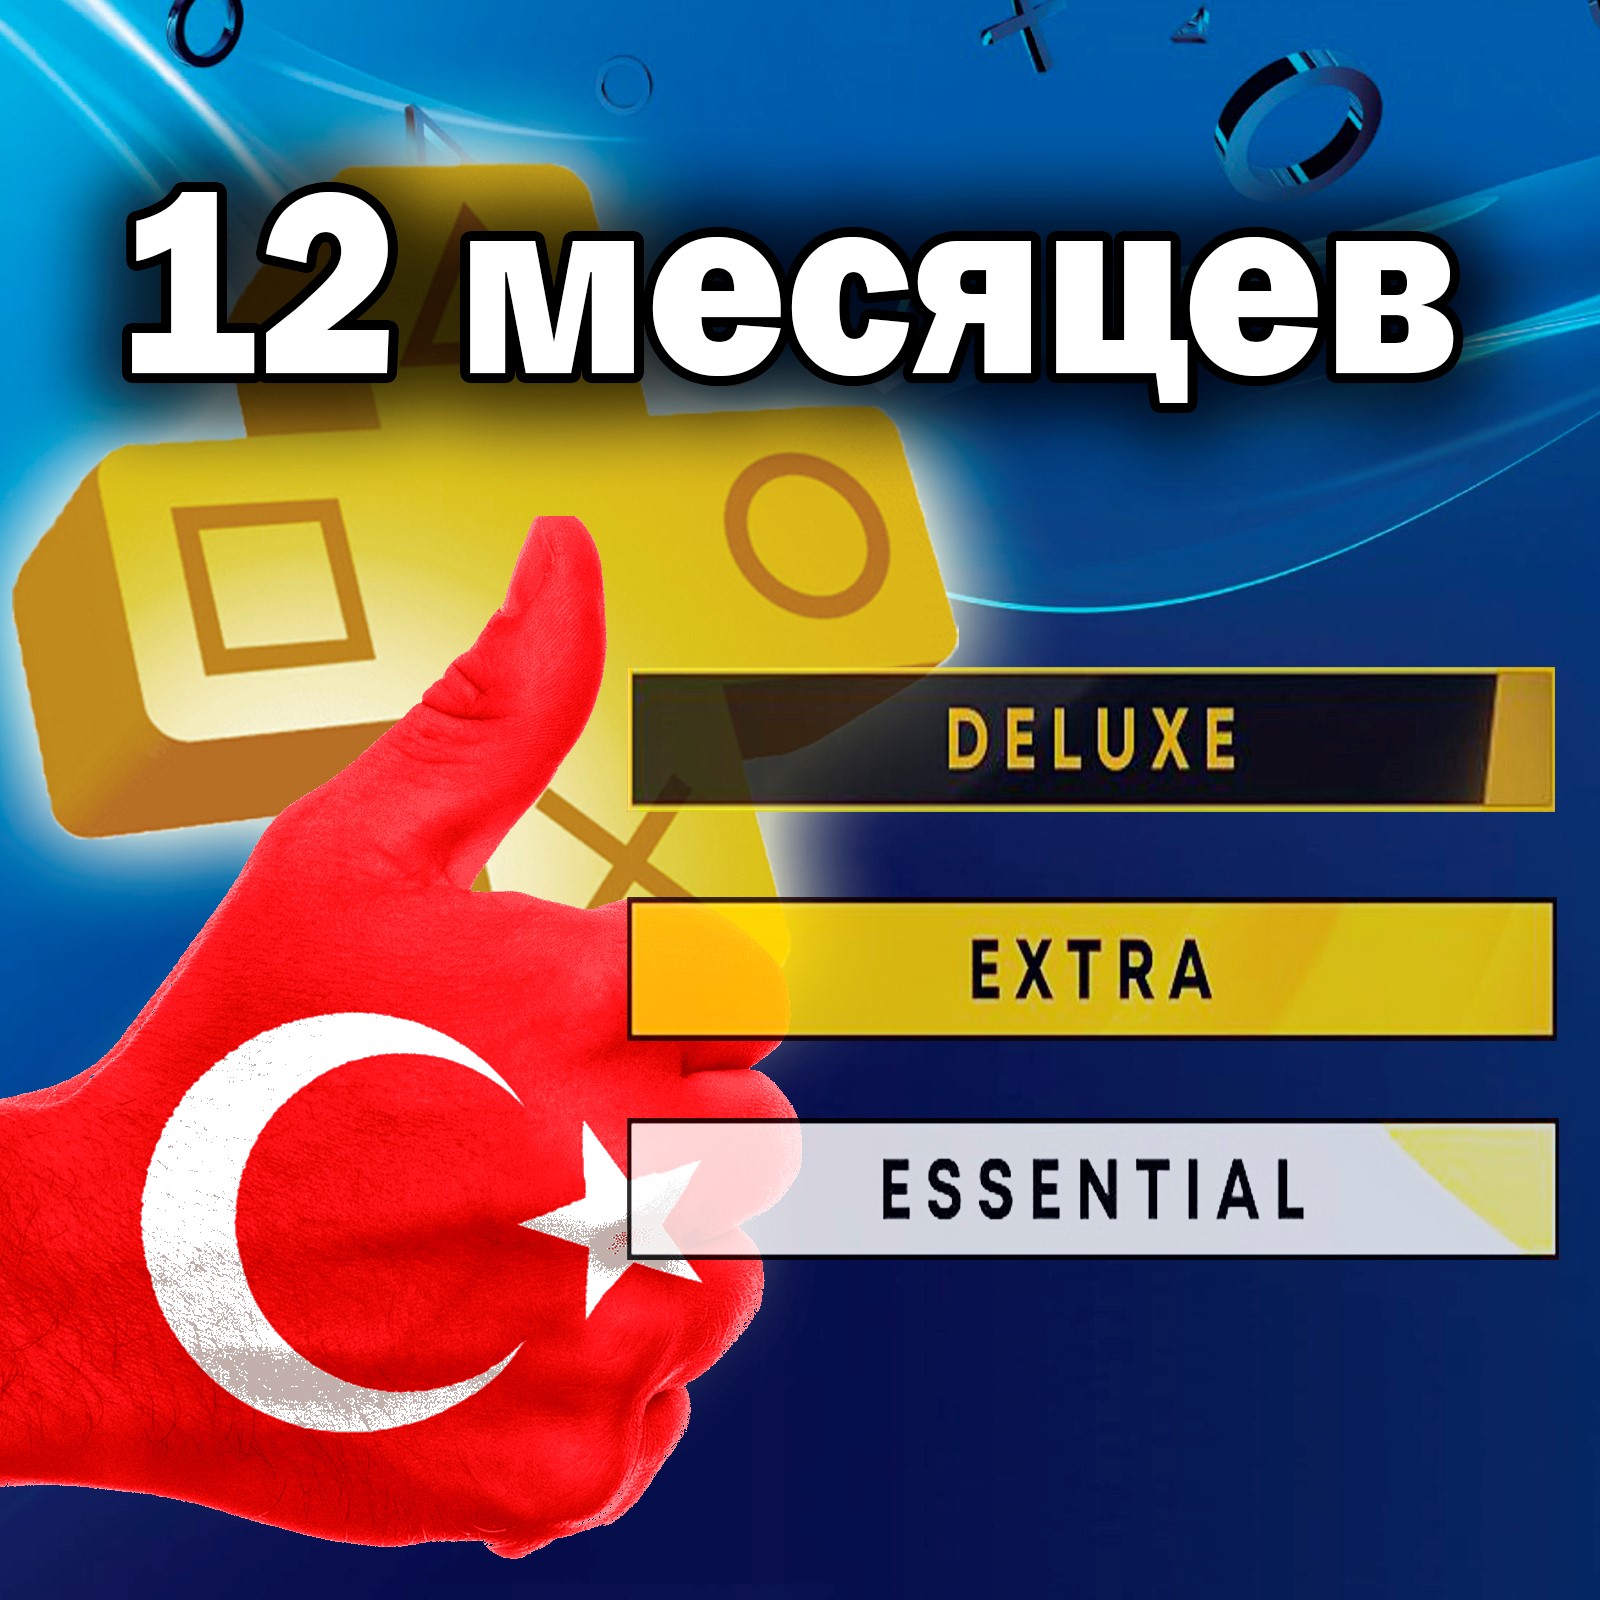 Турецкая подписка ps4 купить. ПС плюс Турция подписка Экстра. Подписка PS Plus Турция. Подписка PS Plus Extra. PS Plus Essential Extra Deluxe.